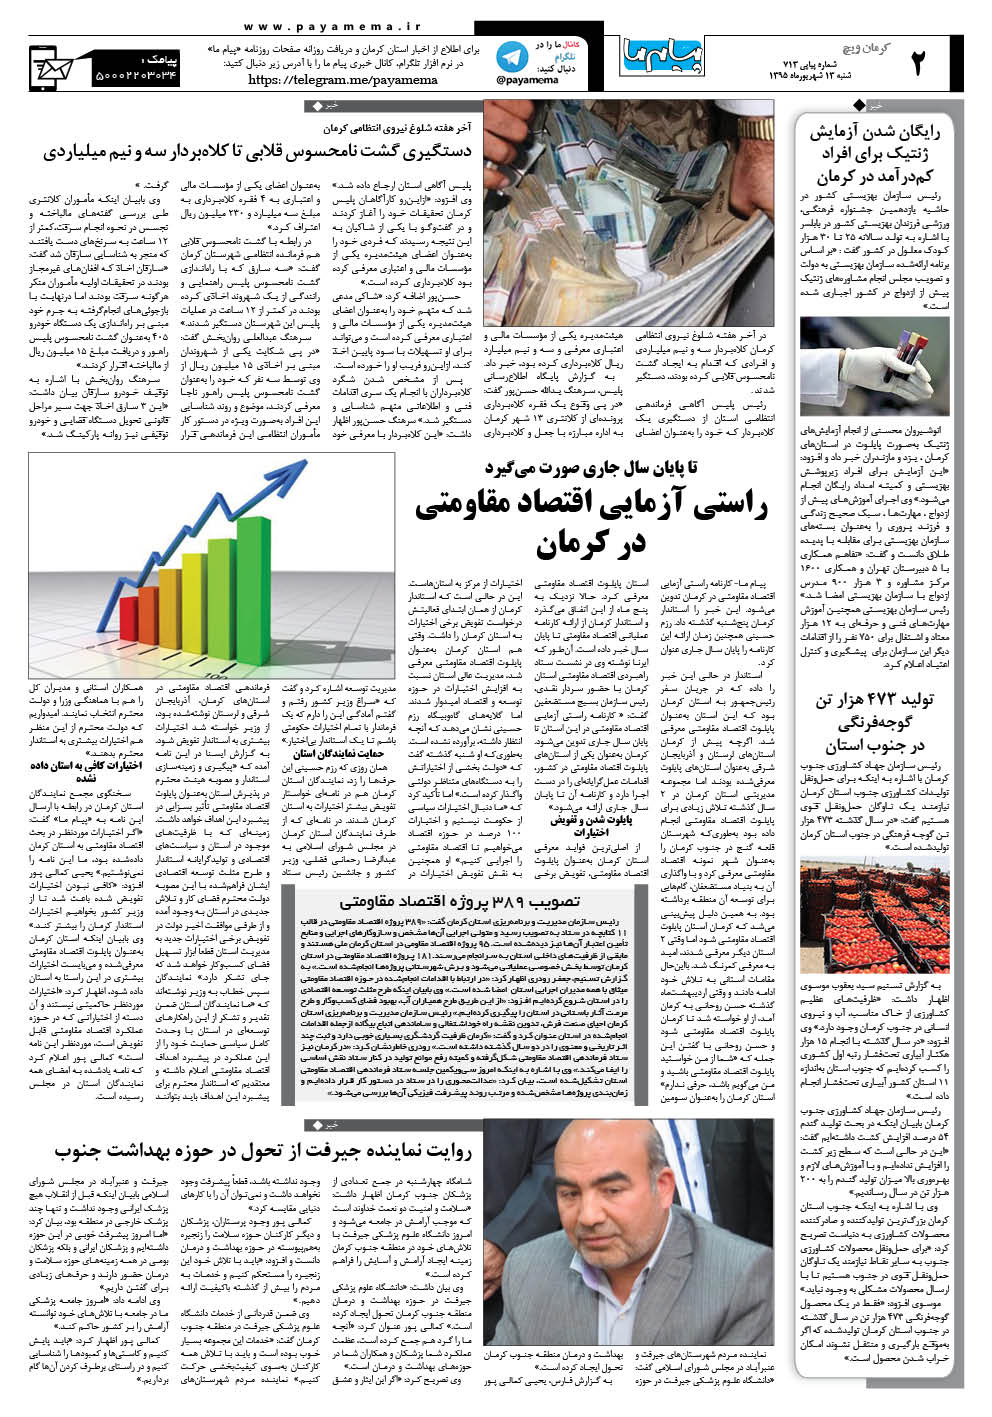 صفحه کرمان ویج شماره 713 روزنامه پیام ما